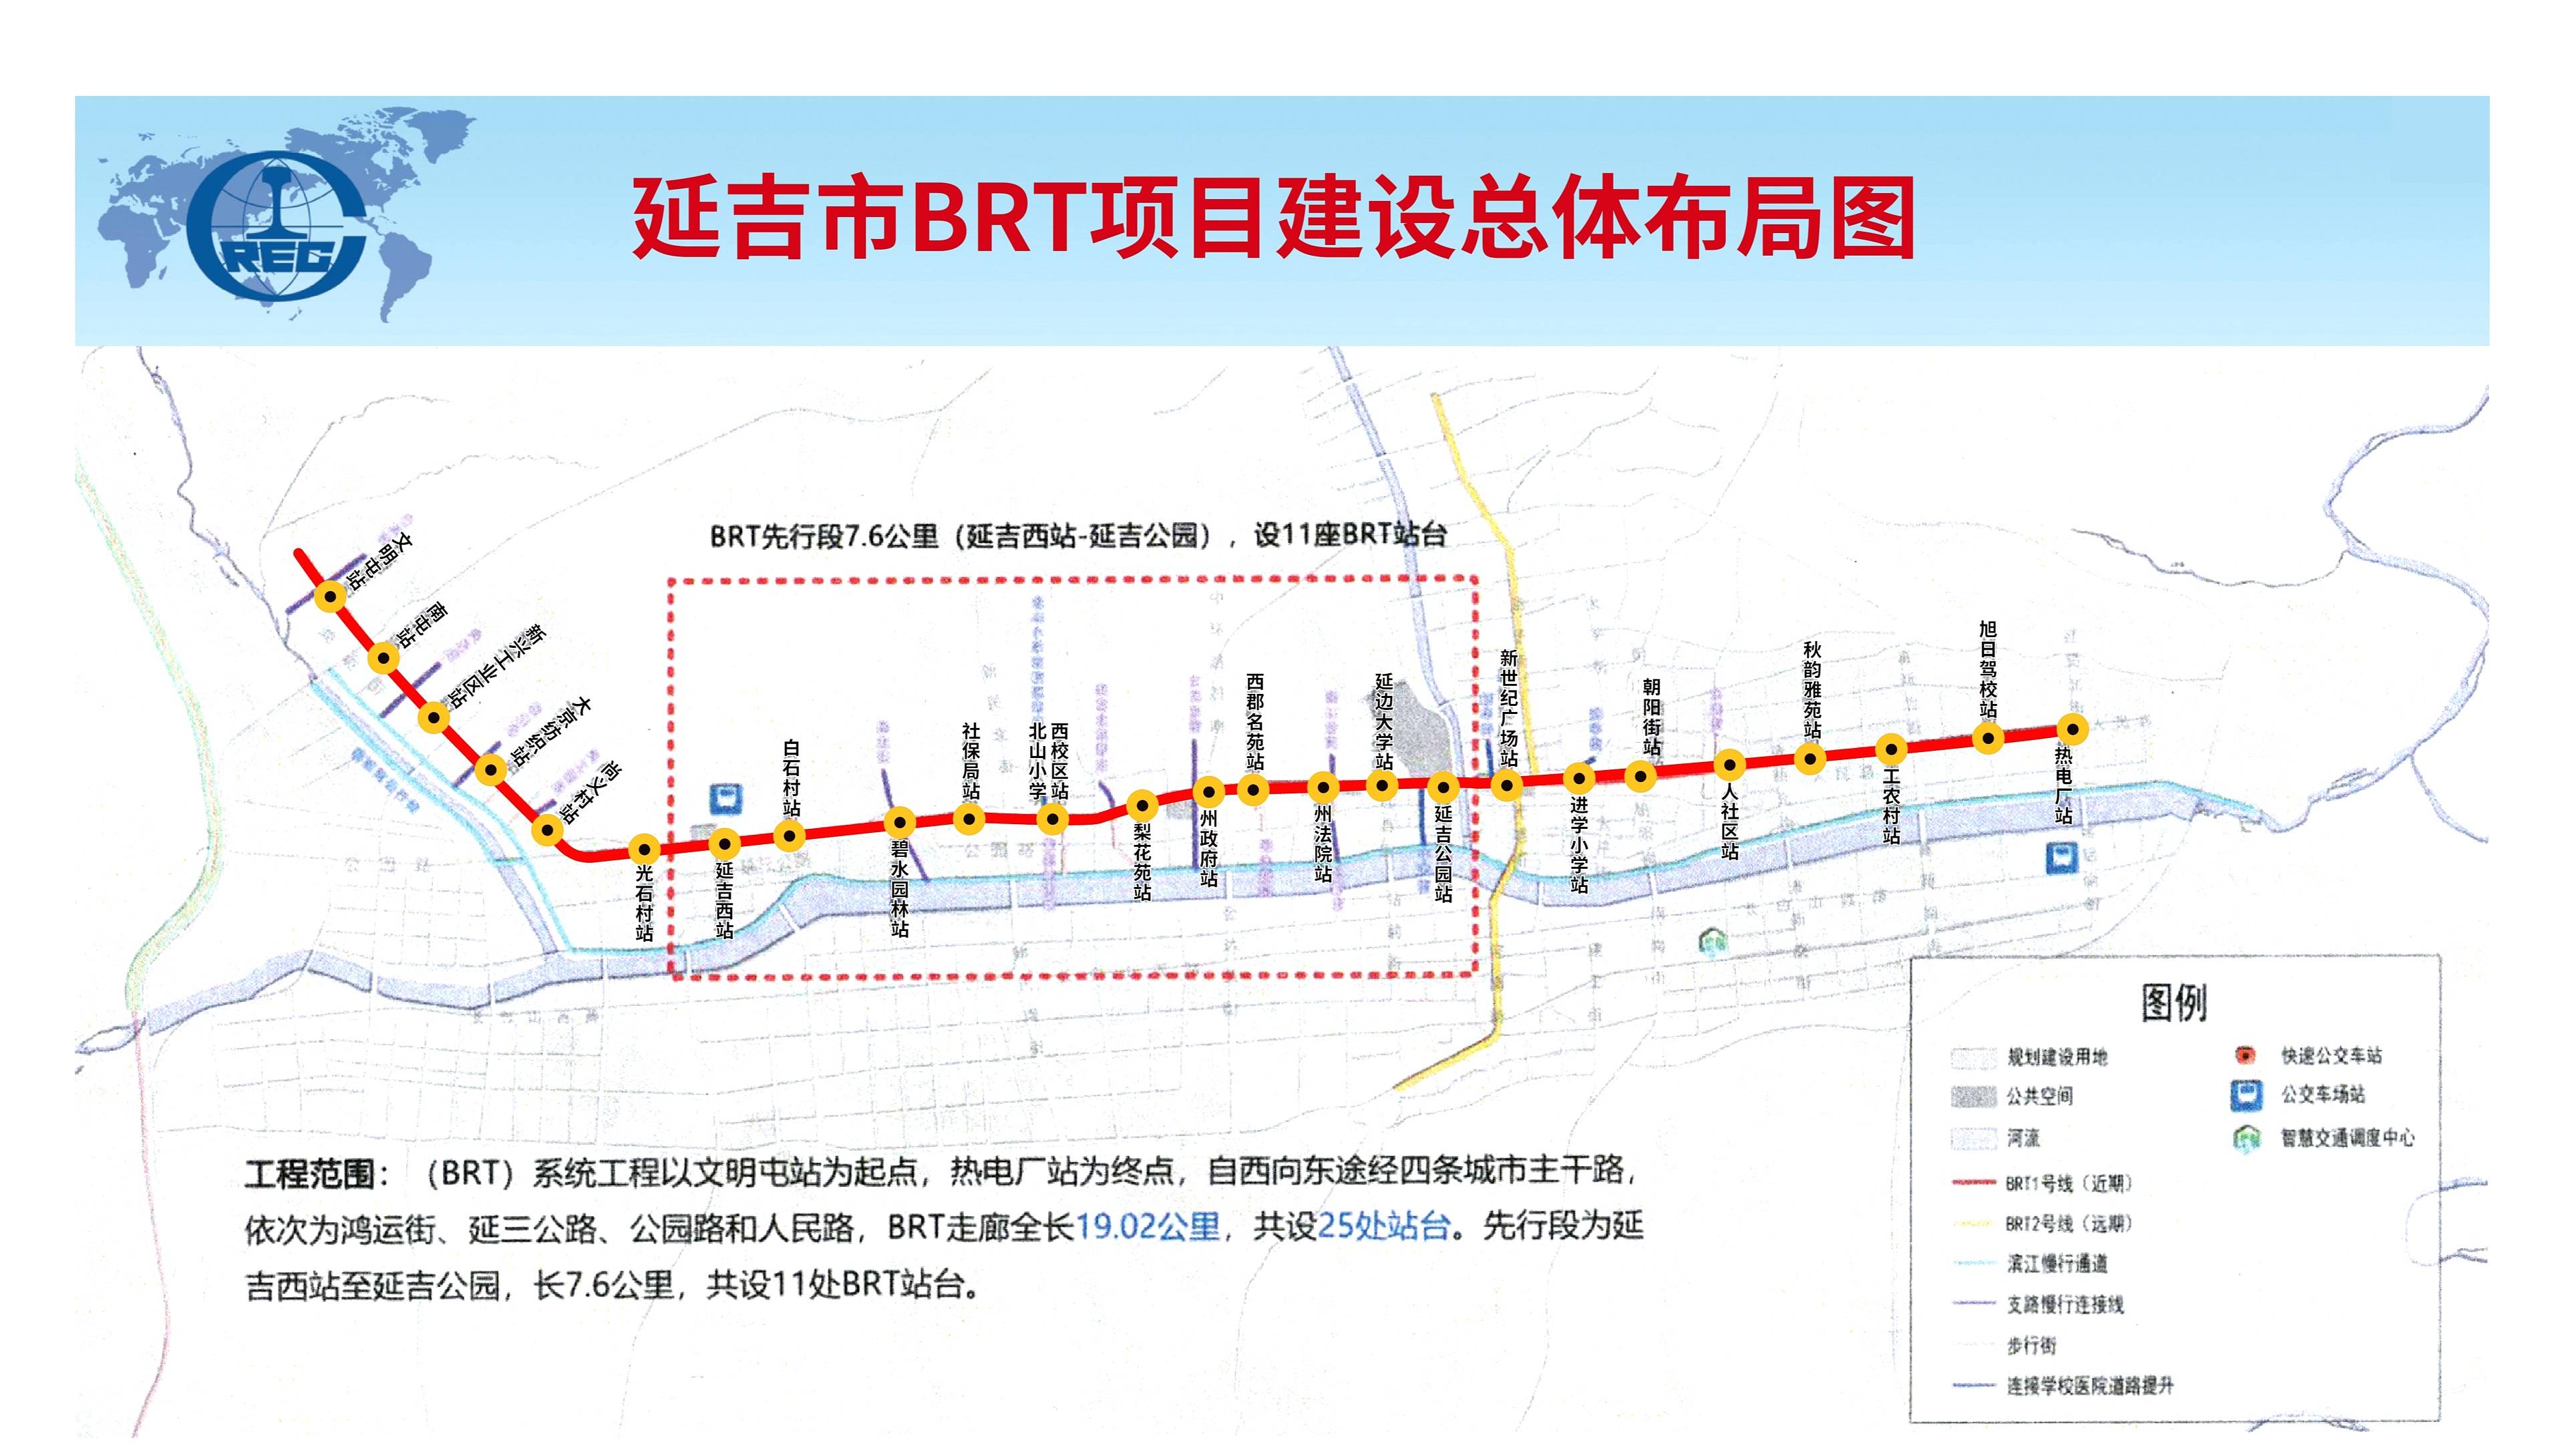 自延吉市快速公交(brt)系统工程开工建设以来,一直备受市民关注.